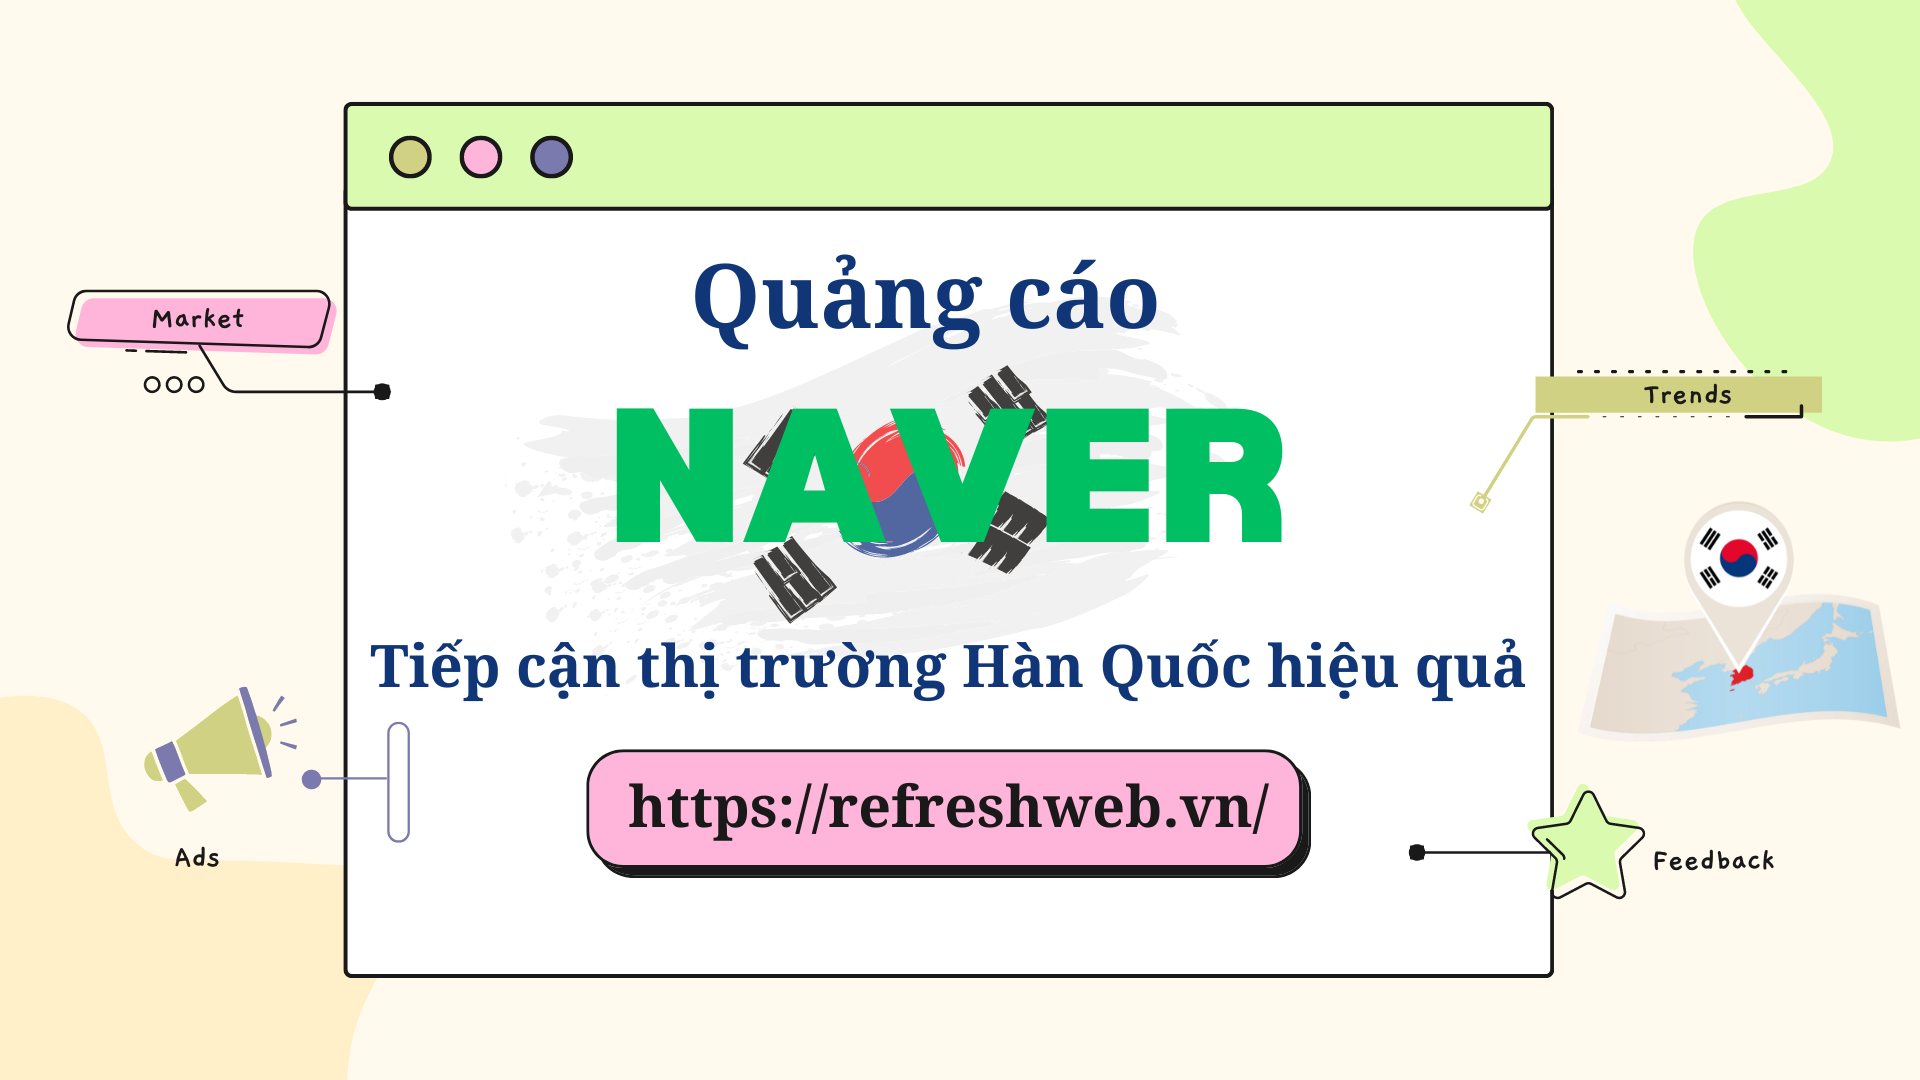 Naver – Nền tảng quảng cáo hàng đầu kết nối các doanh nghiệp đến với thị trường Hàn Quốc.